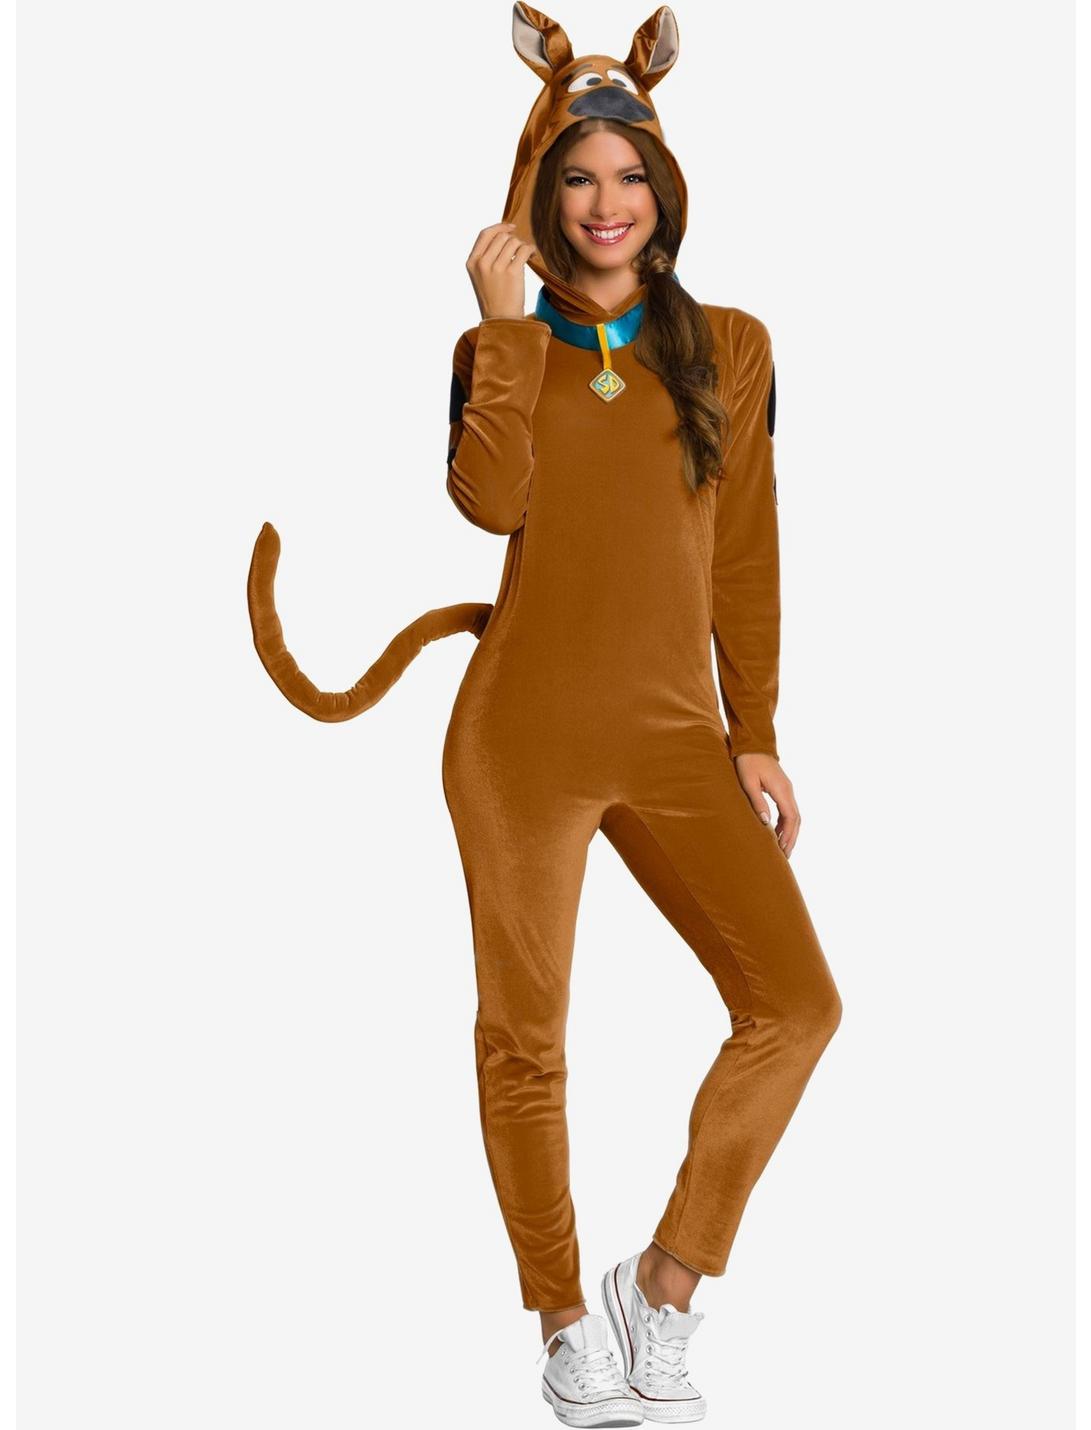 Scooby Doo Women's Costume, BROWN, hi-res